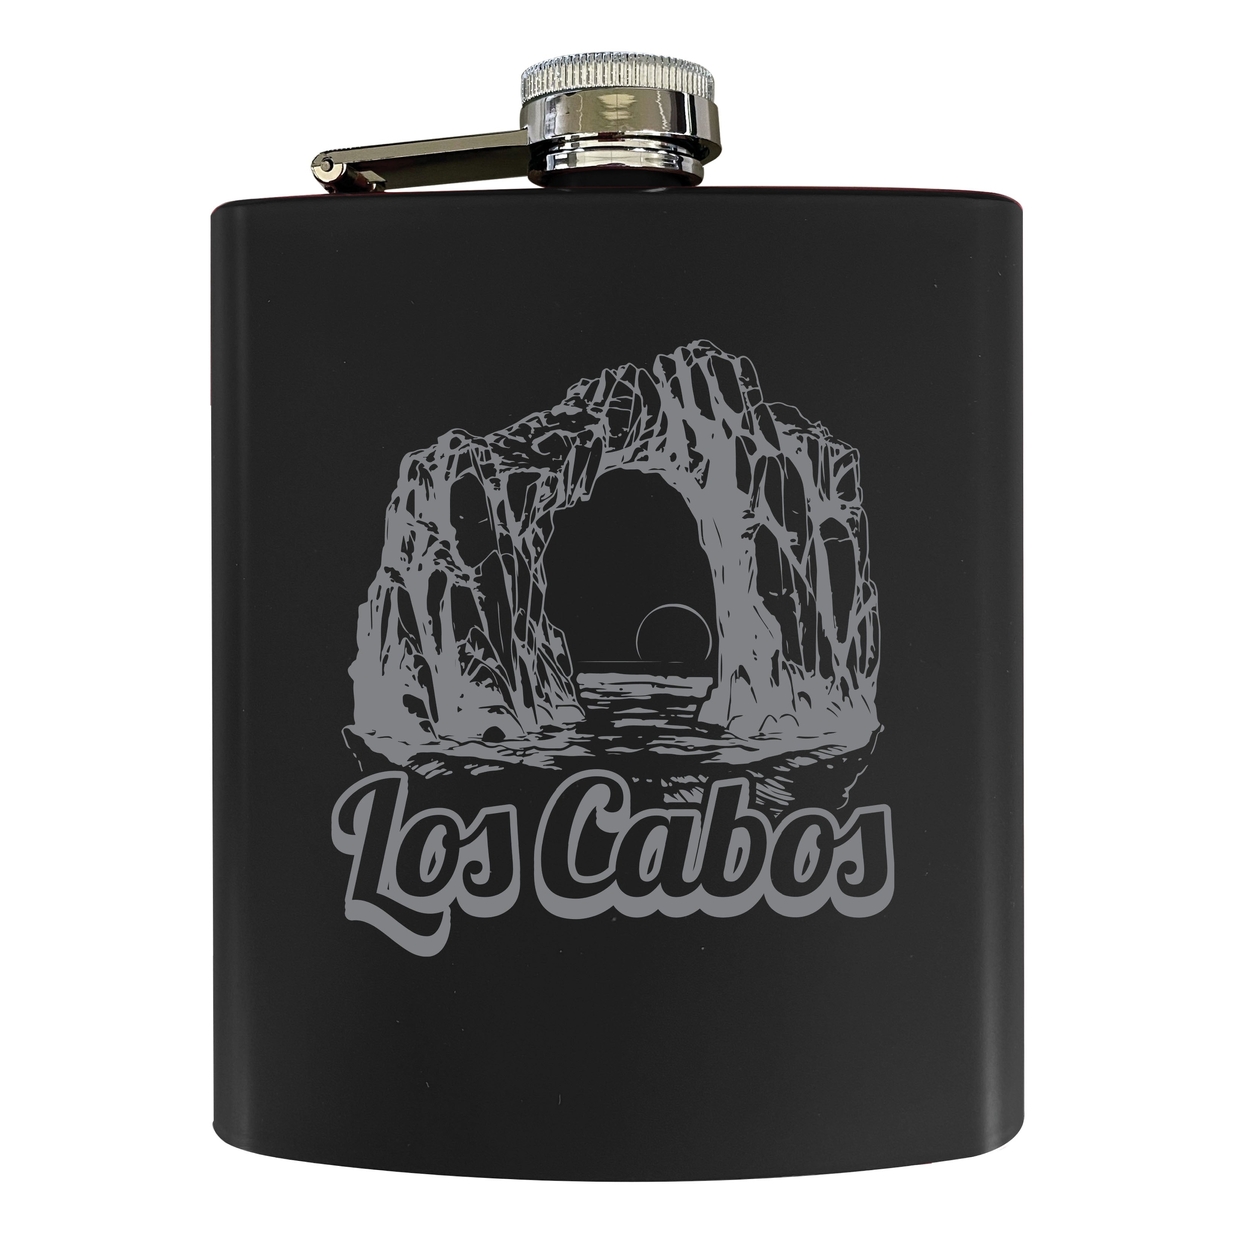 Los Cabos Mexico Souvenir 7 Oz Engraved Steel Flask Matte Finish - Black,,Single Unit